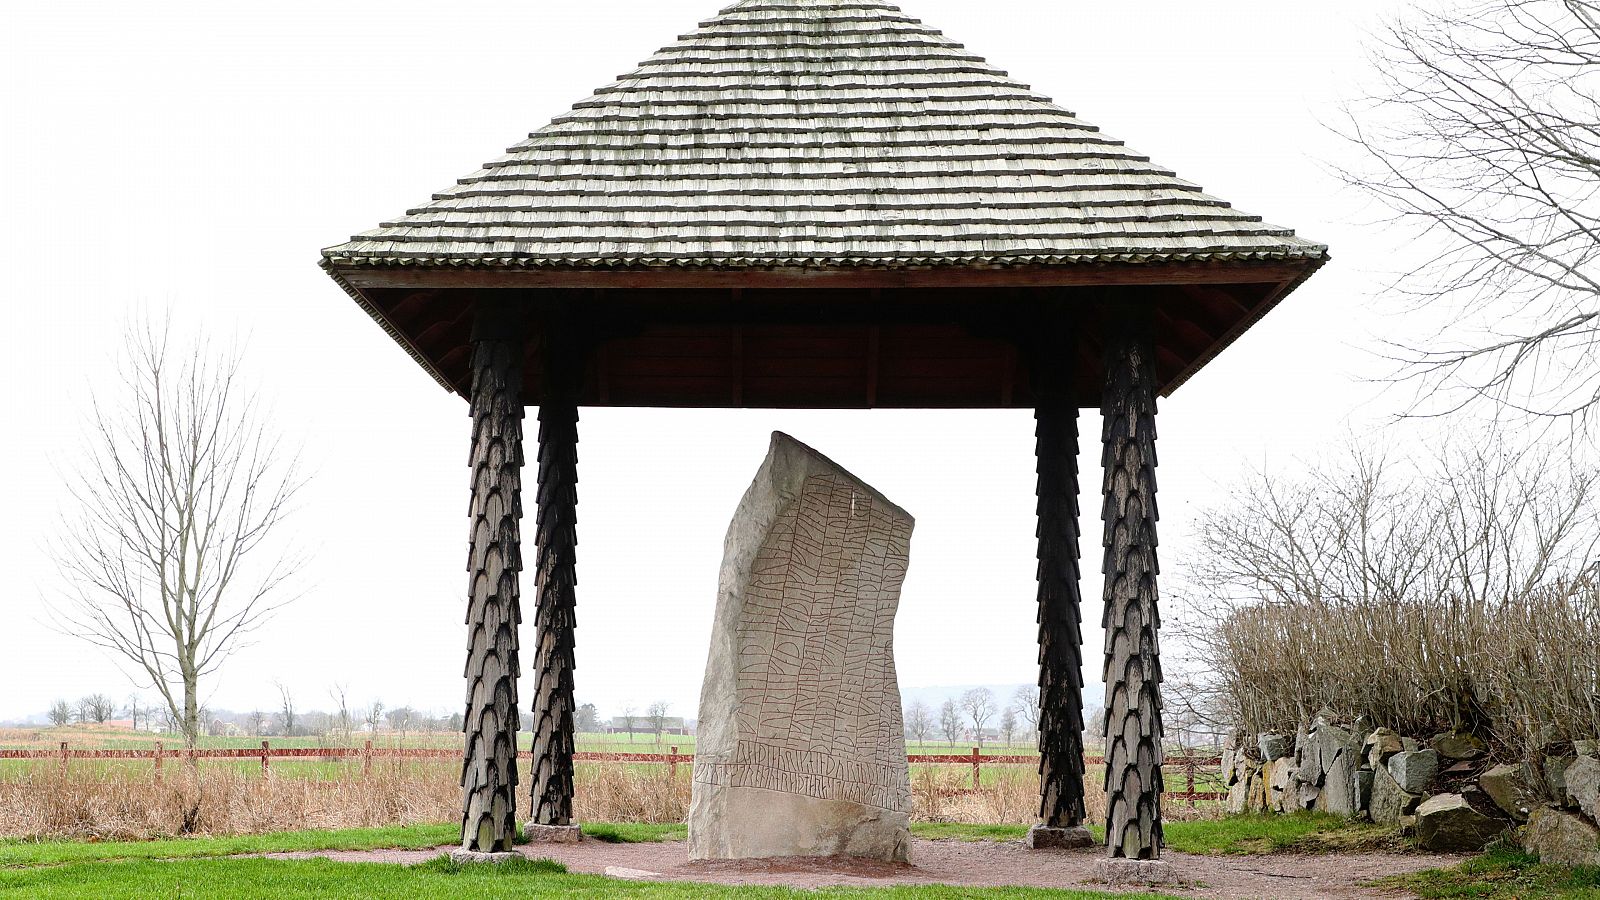 La piedra rúnica de Rök, erigida en Ístergötland, Suecia, alrededor del año 800 dC.